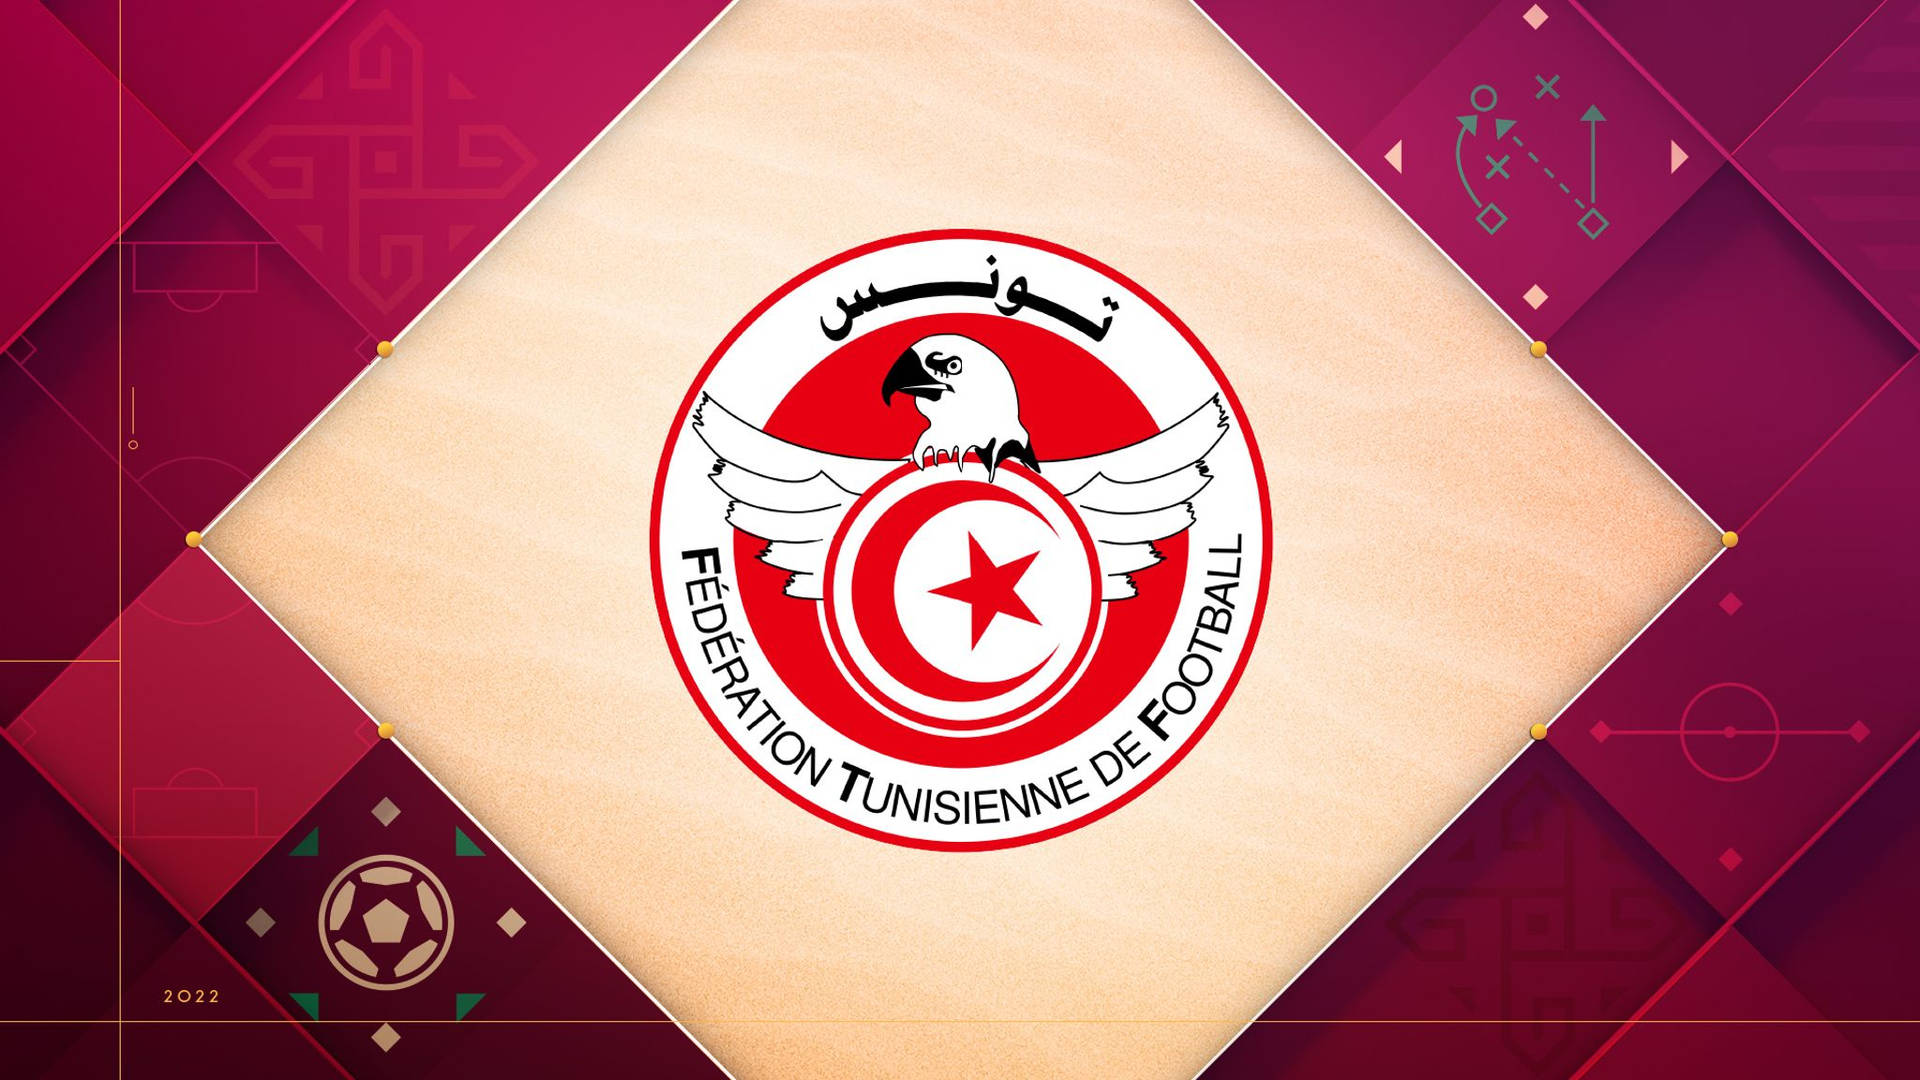 Logoda Seleção Nacional De Futebol Da Tunísia Em Estilo Estético Vermelho. Papel de Parede